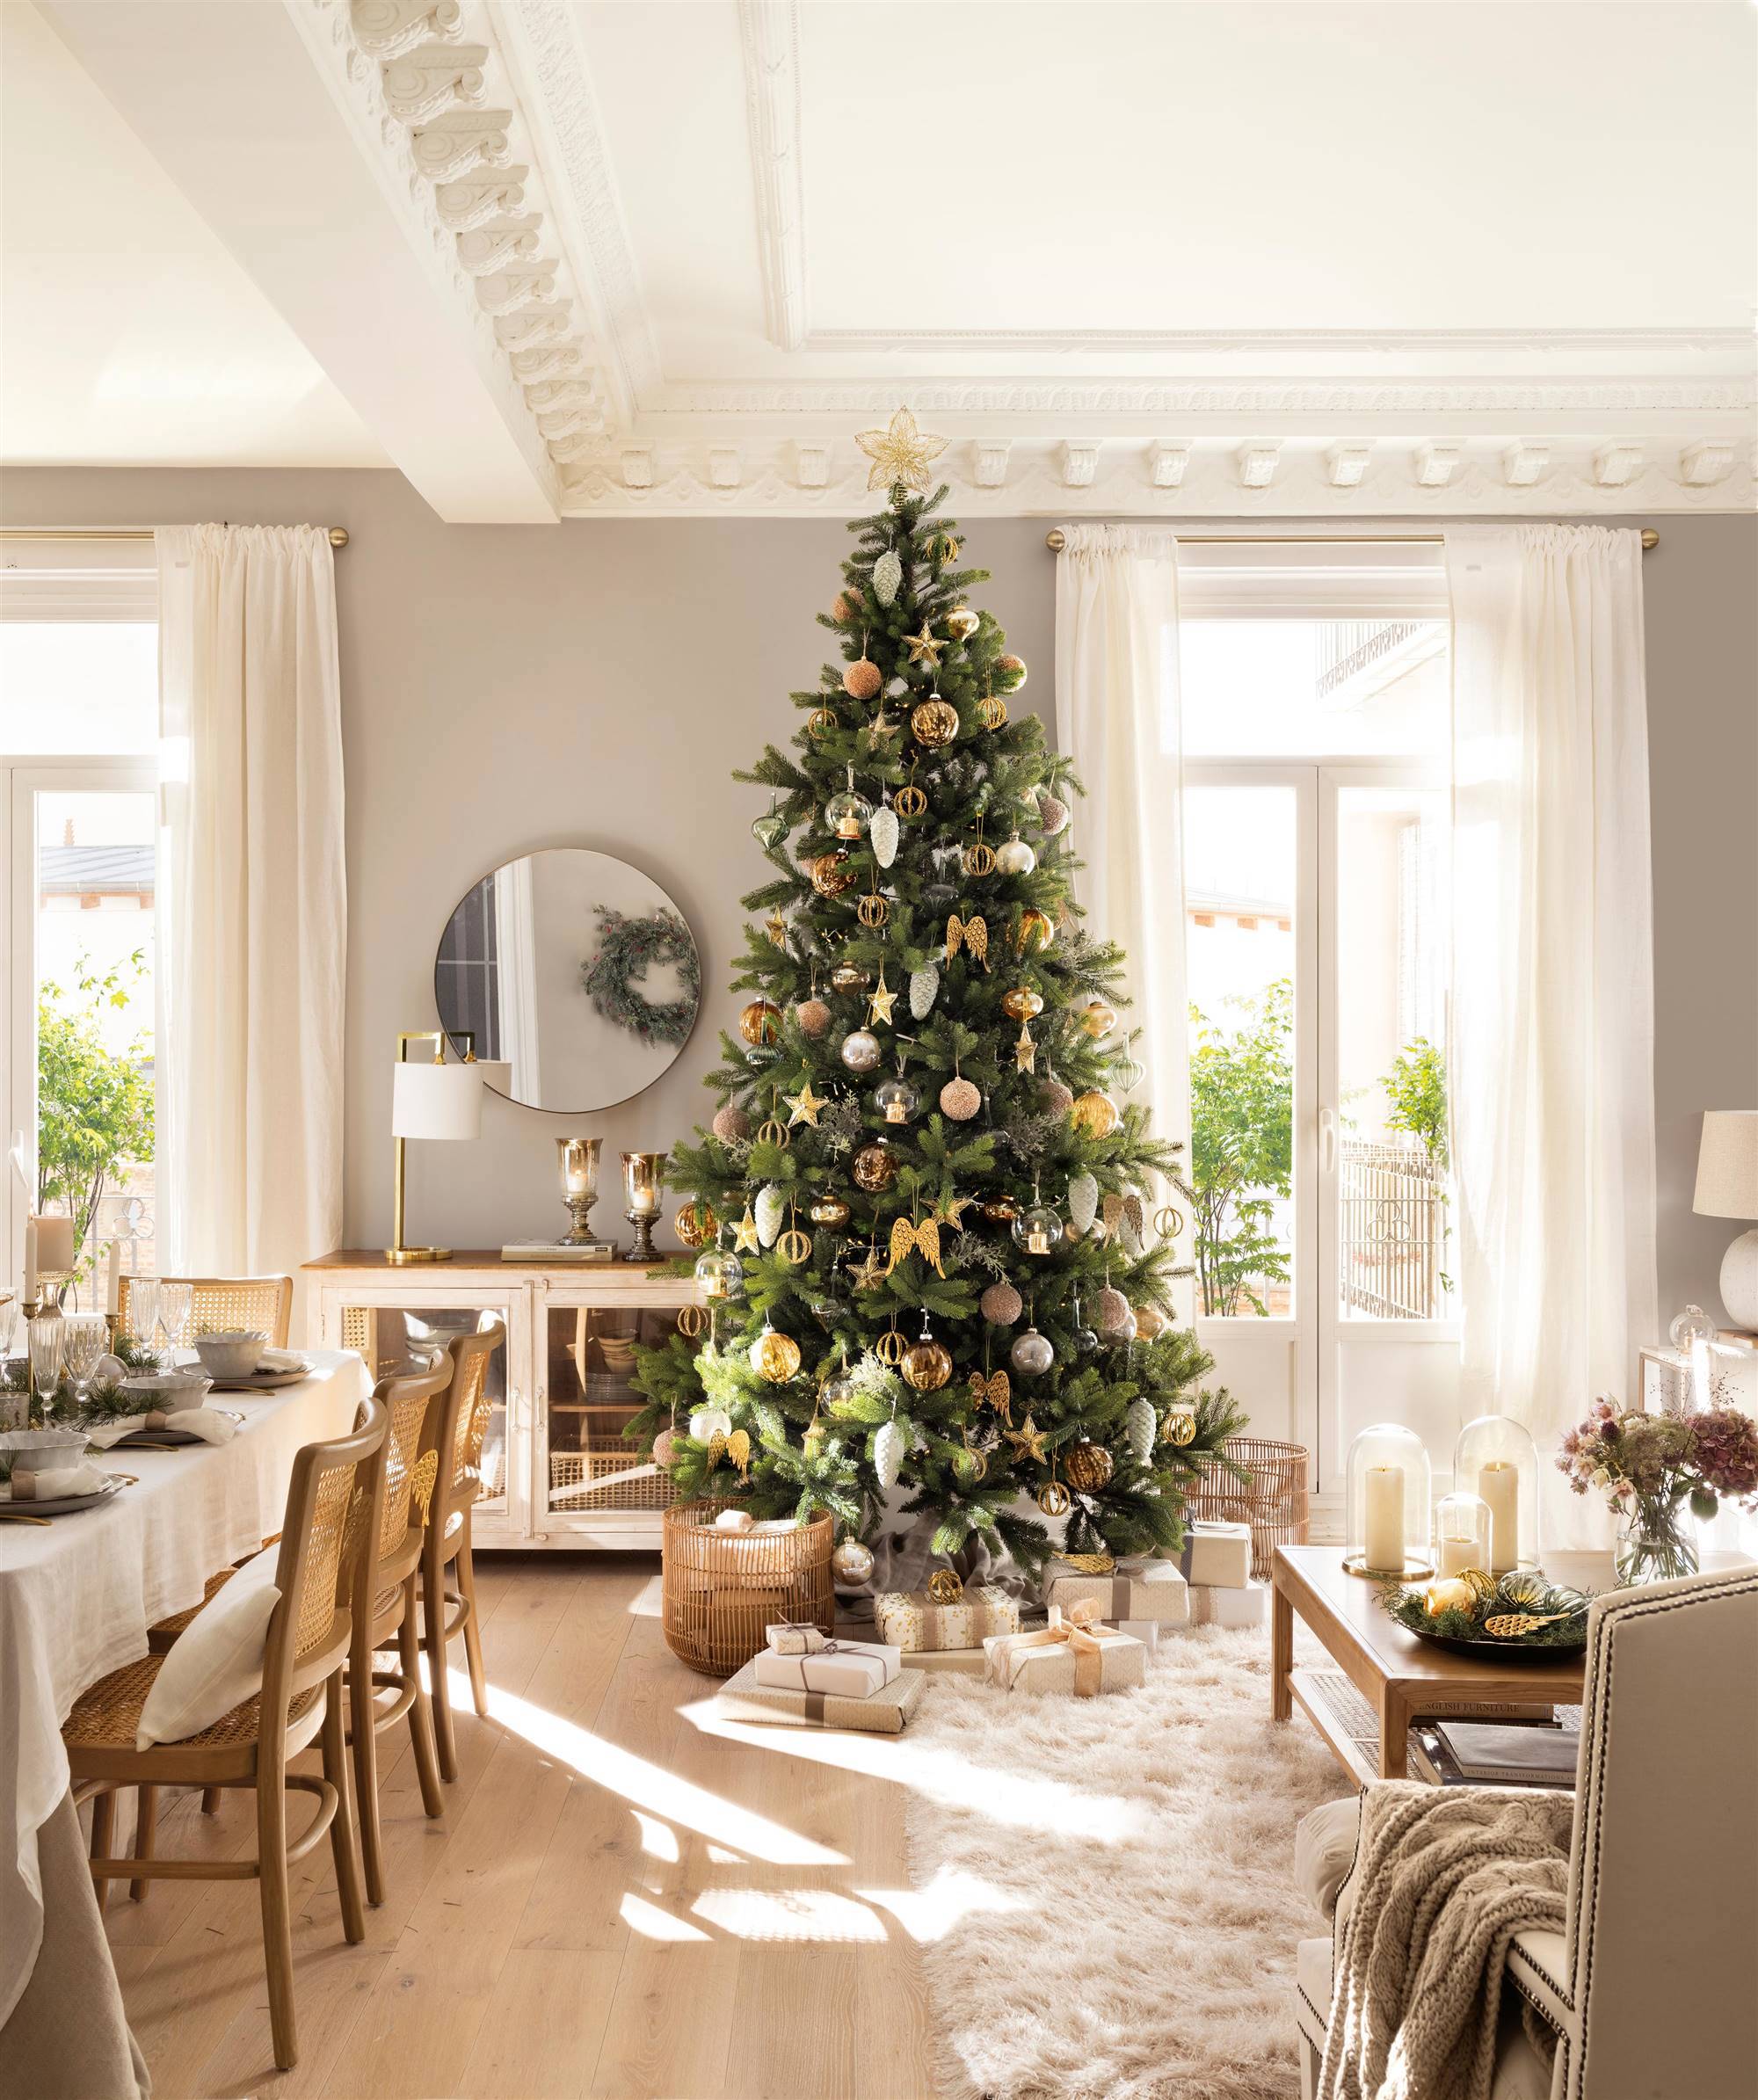 Salón decorado de Navidad con árbol con adornos dorados y plateados.